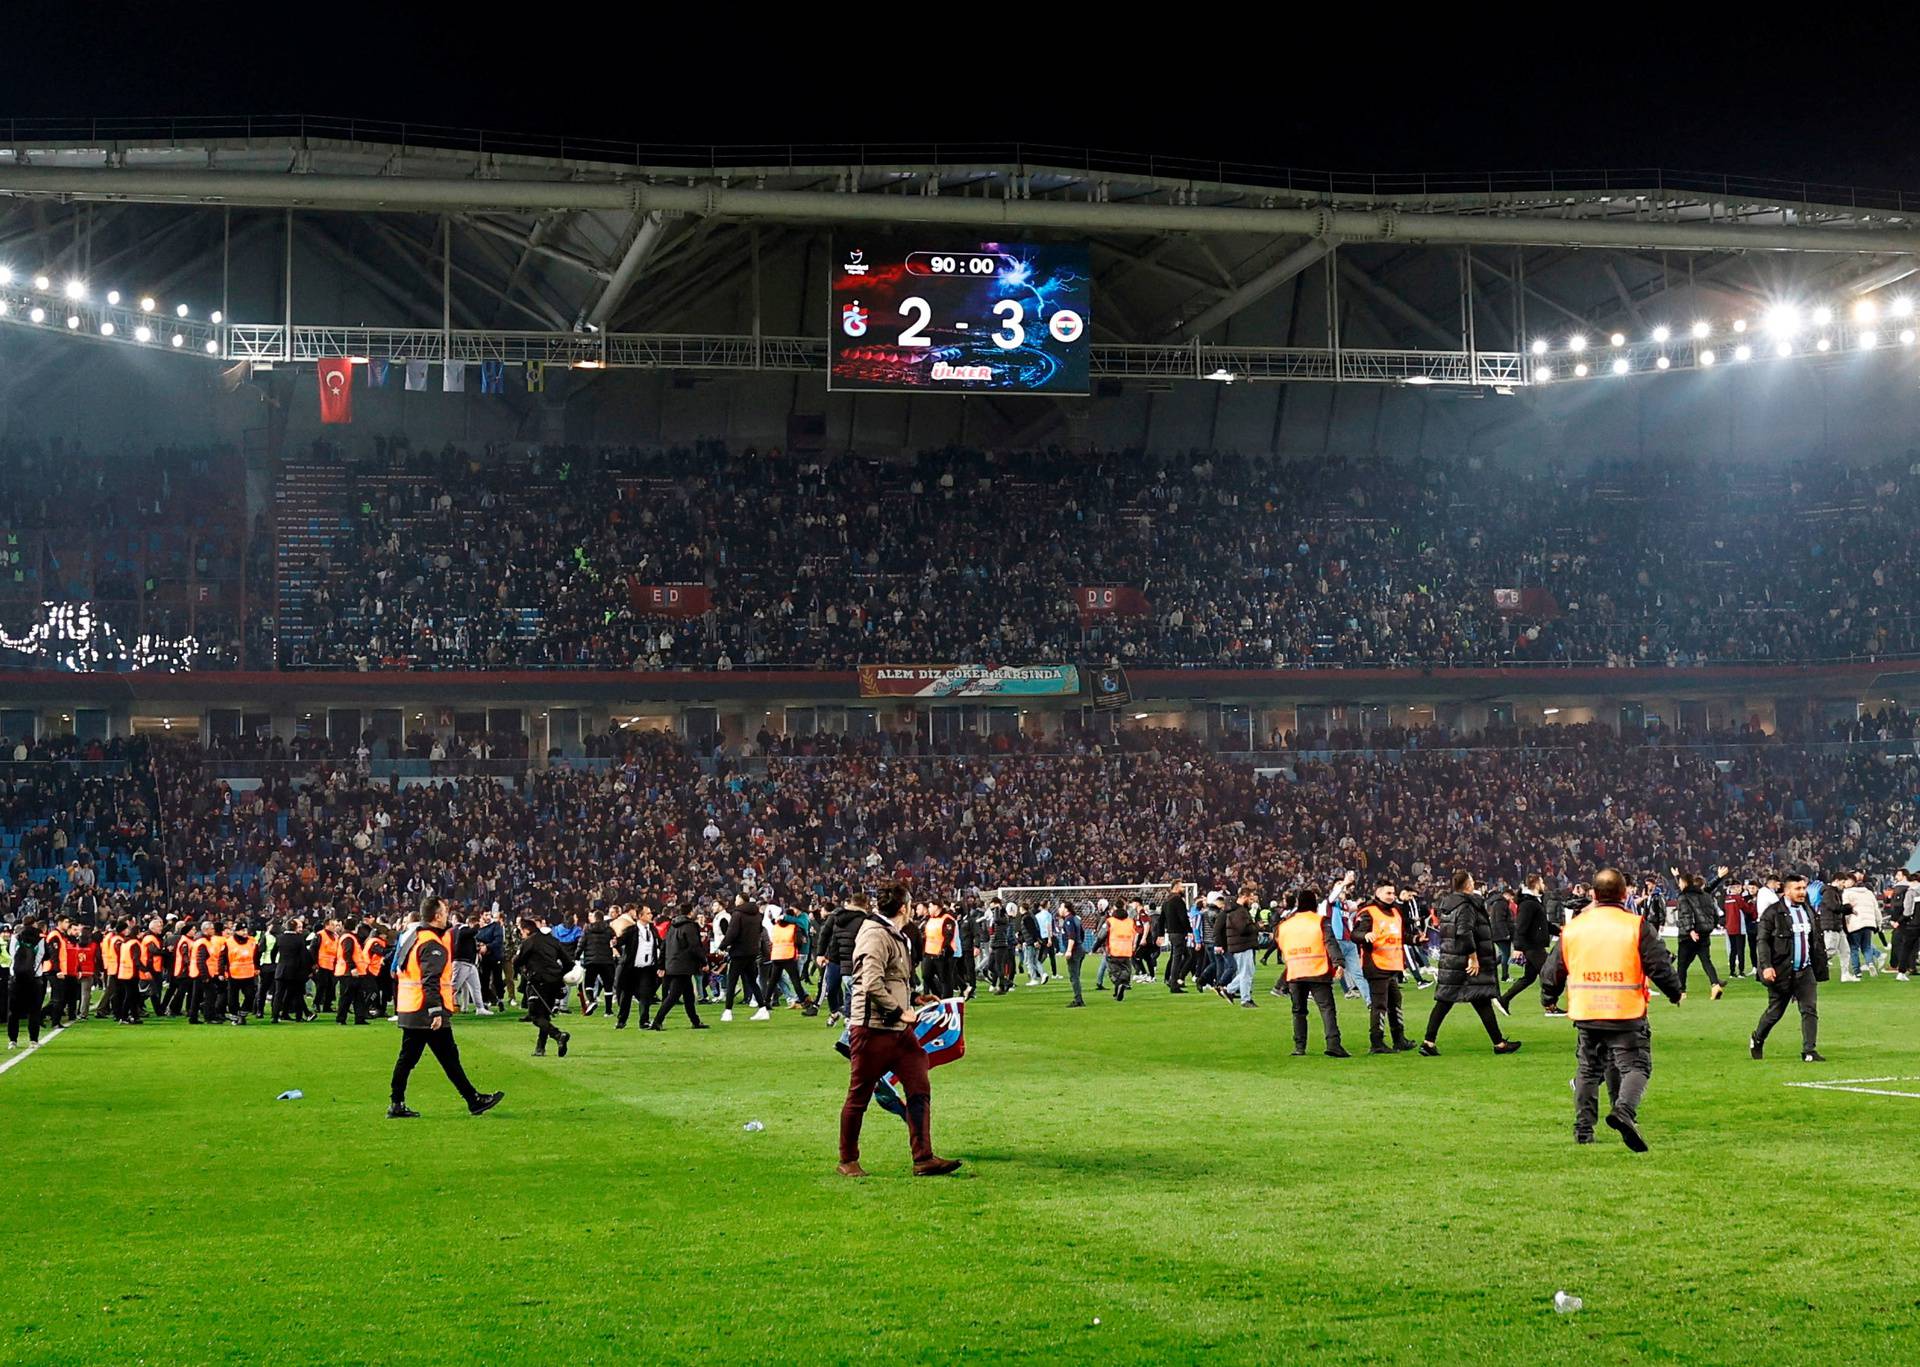 Super Lig - Trabzonspor v Fenerbahce